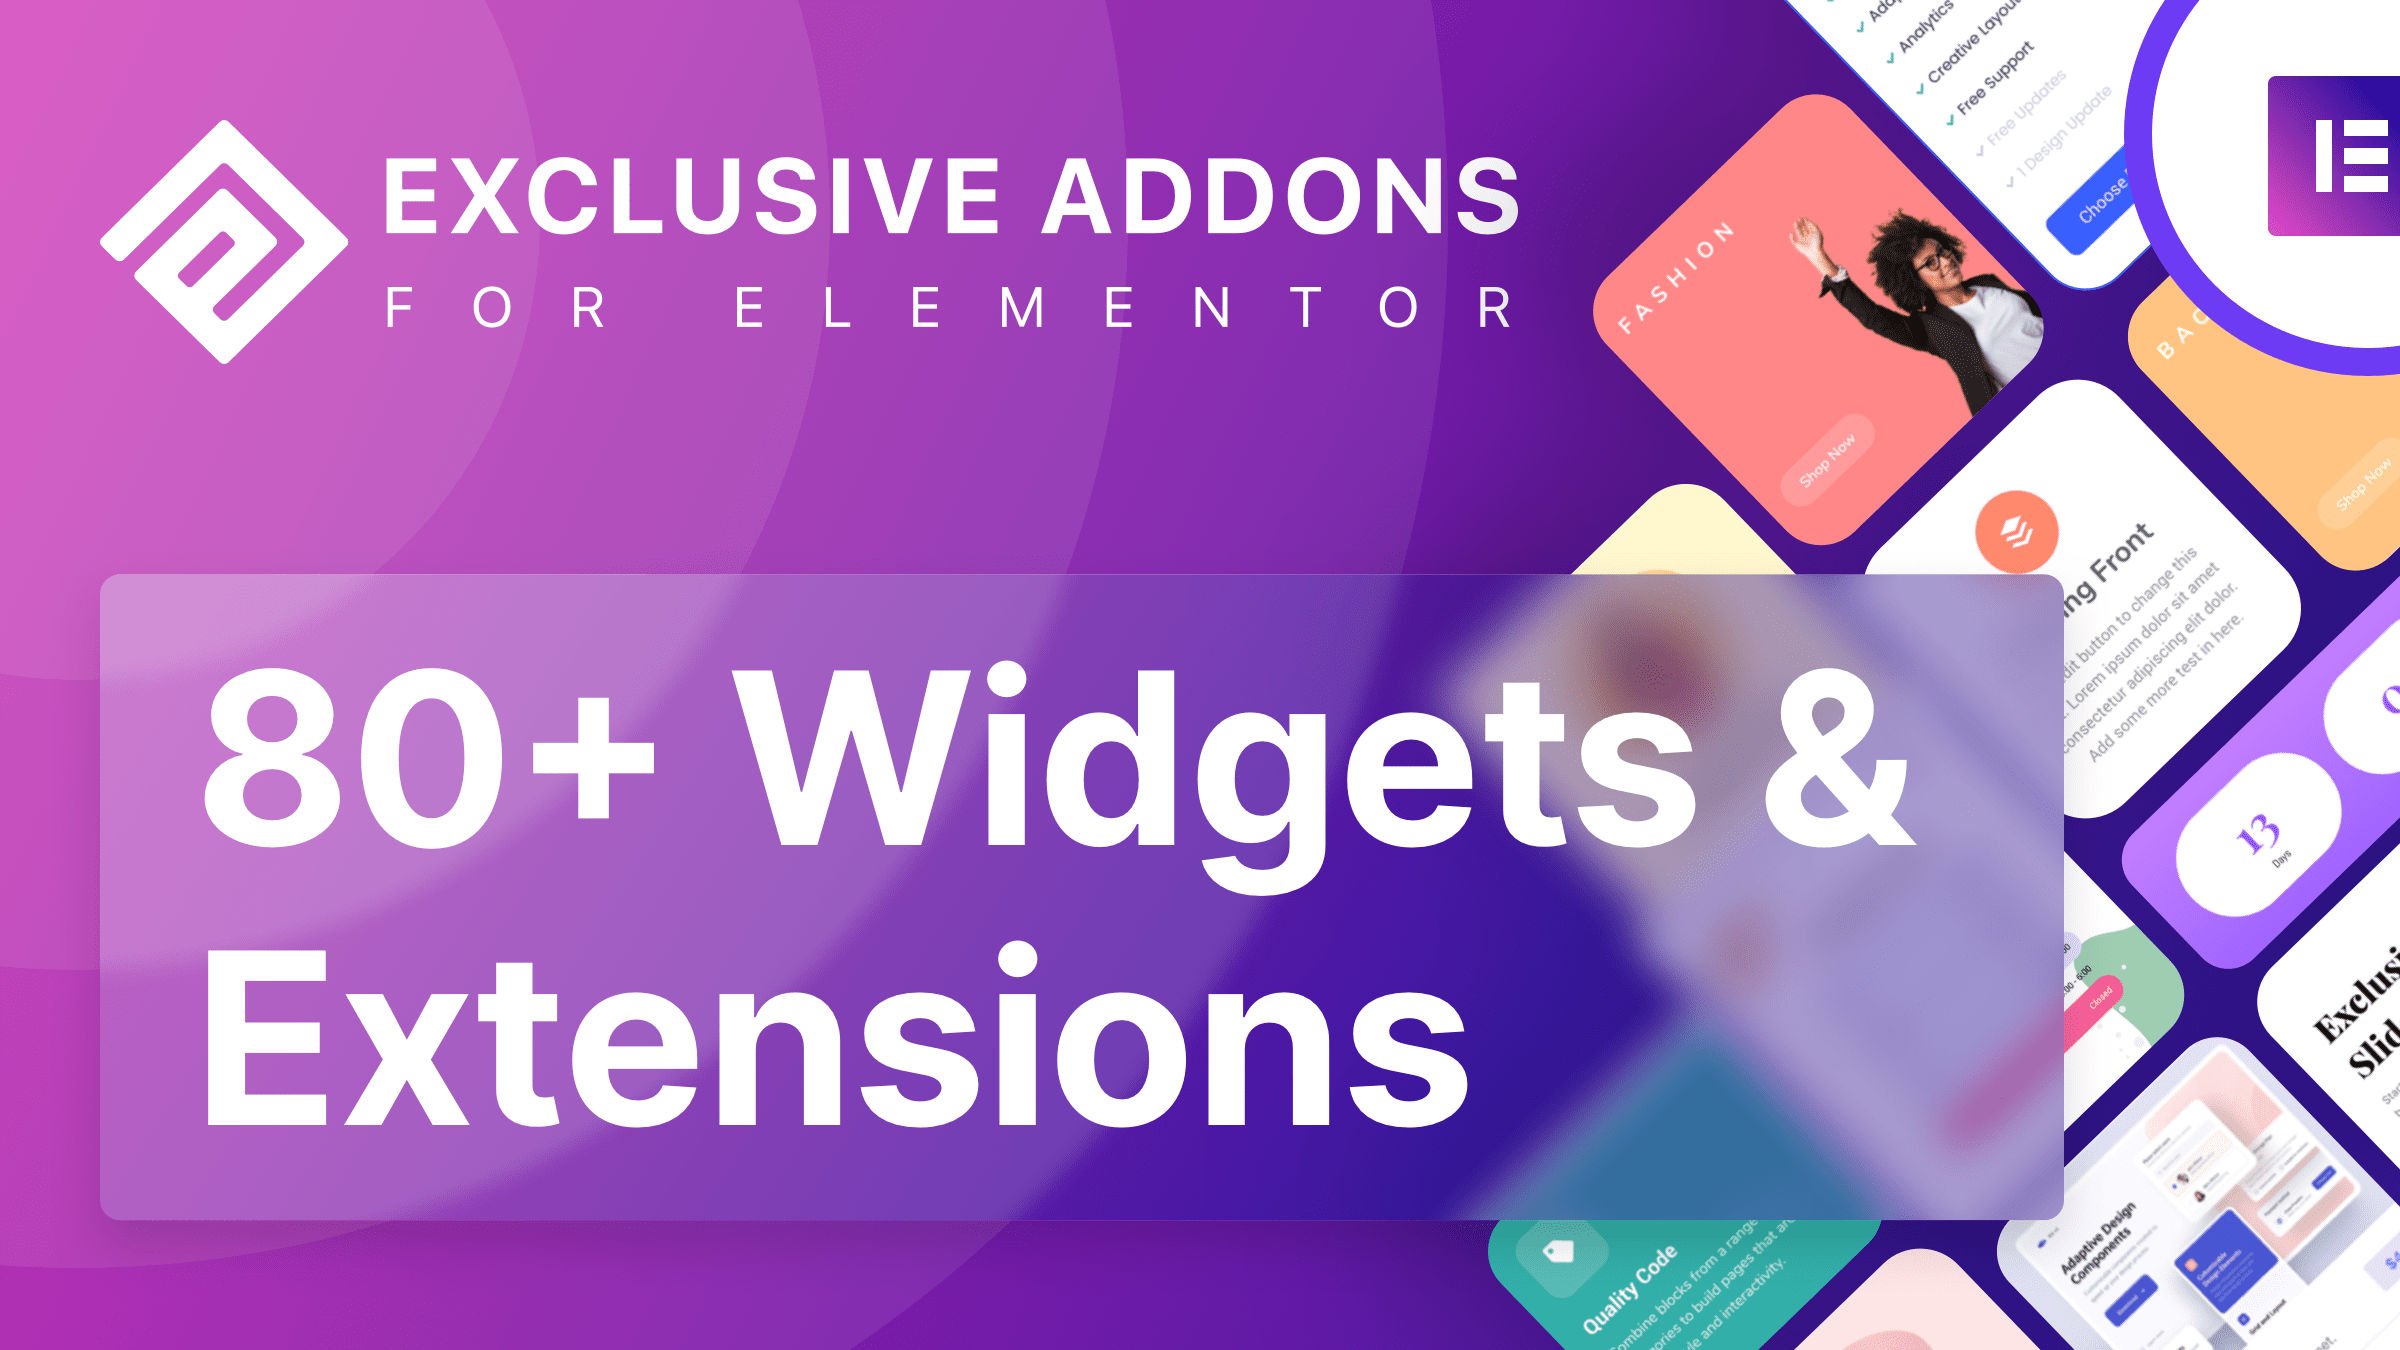 Exclusive Addons Elementor Pro.jpg